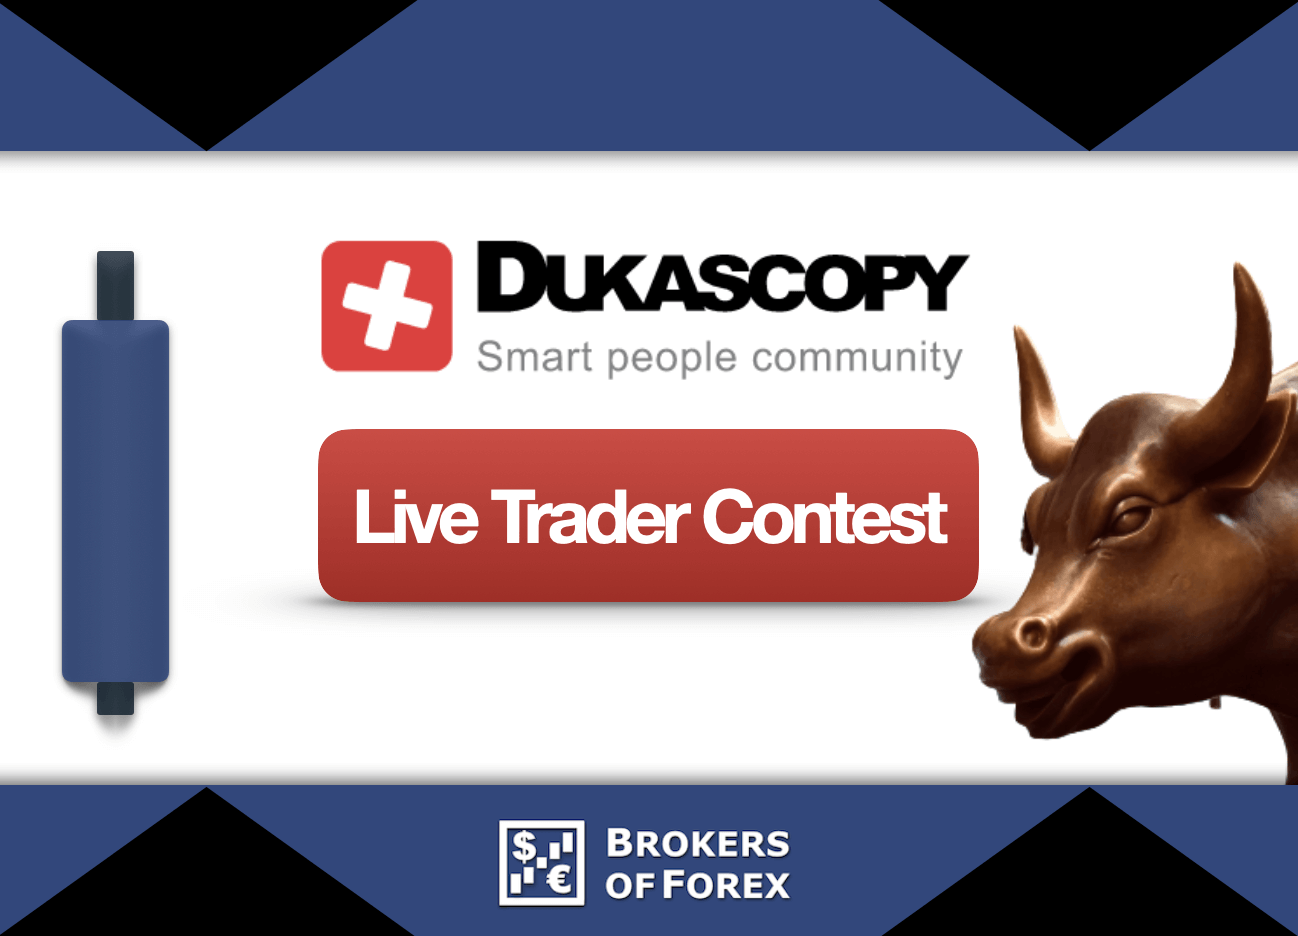 Dukascopy Live Trader Contest